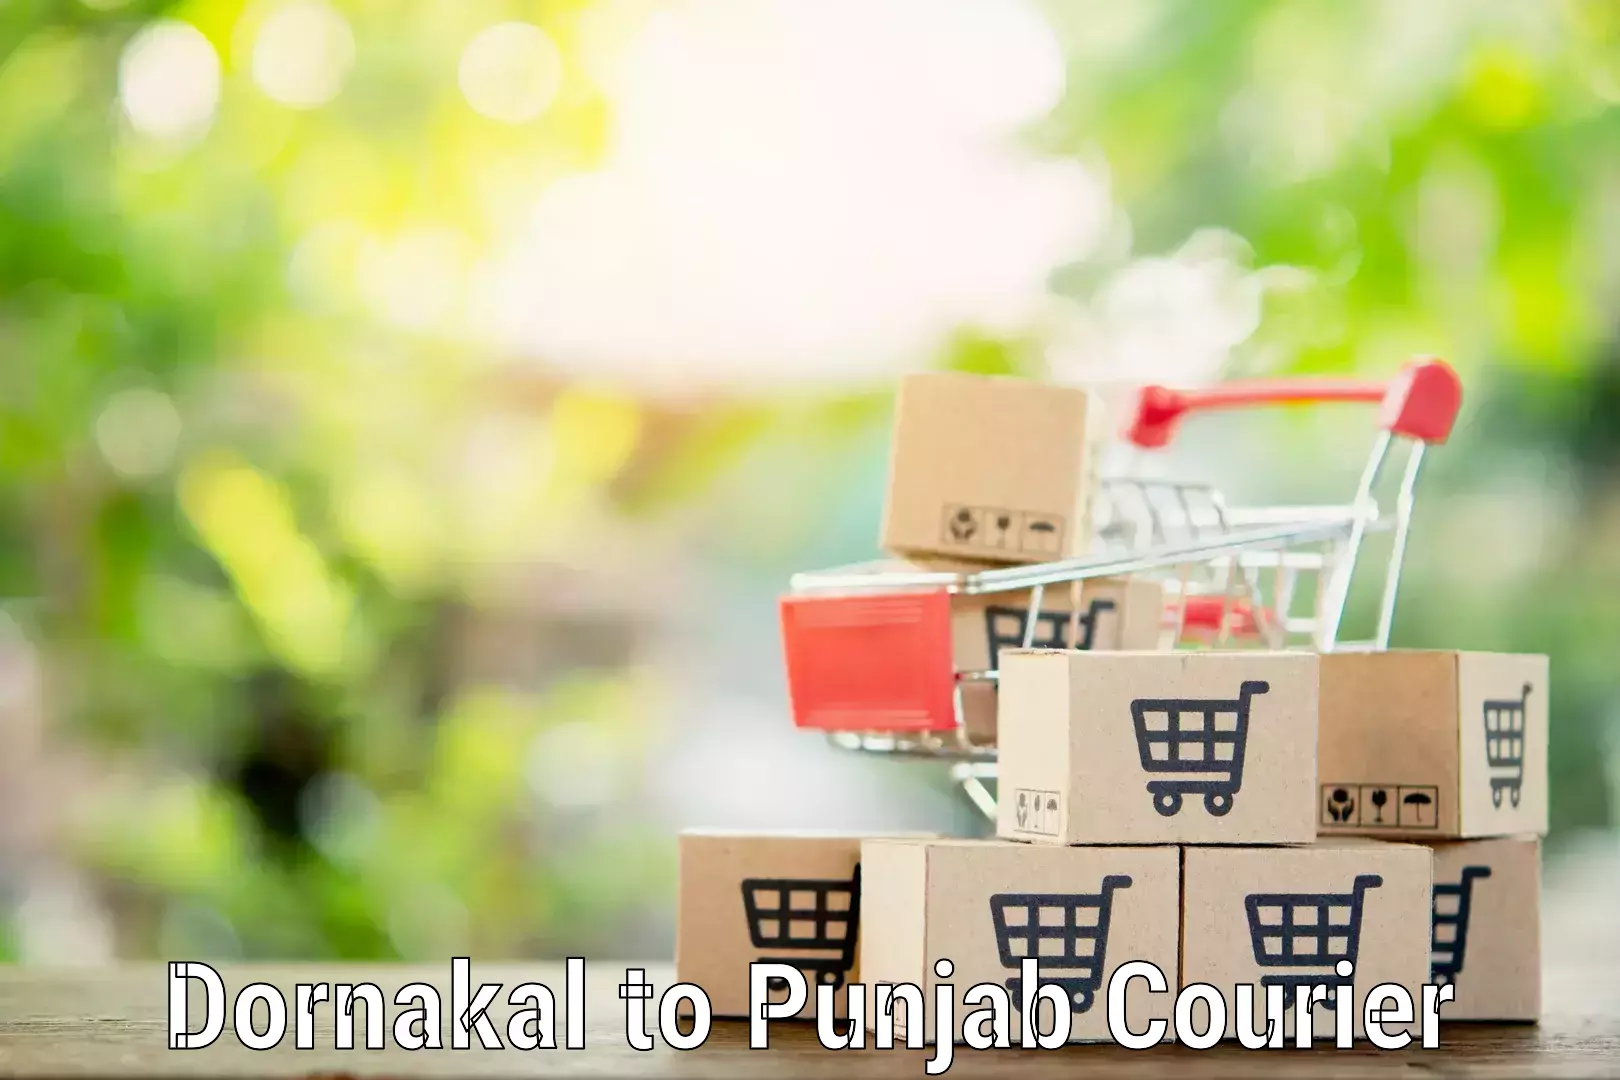 Household goods transport service Dornakal to IIT Ropar